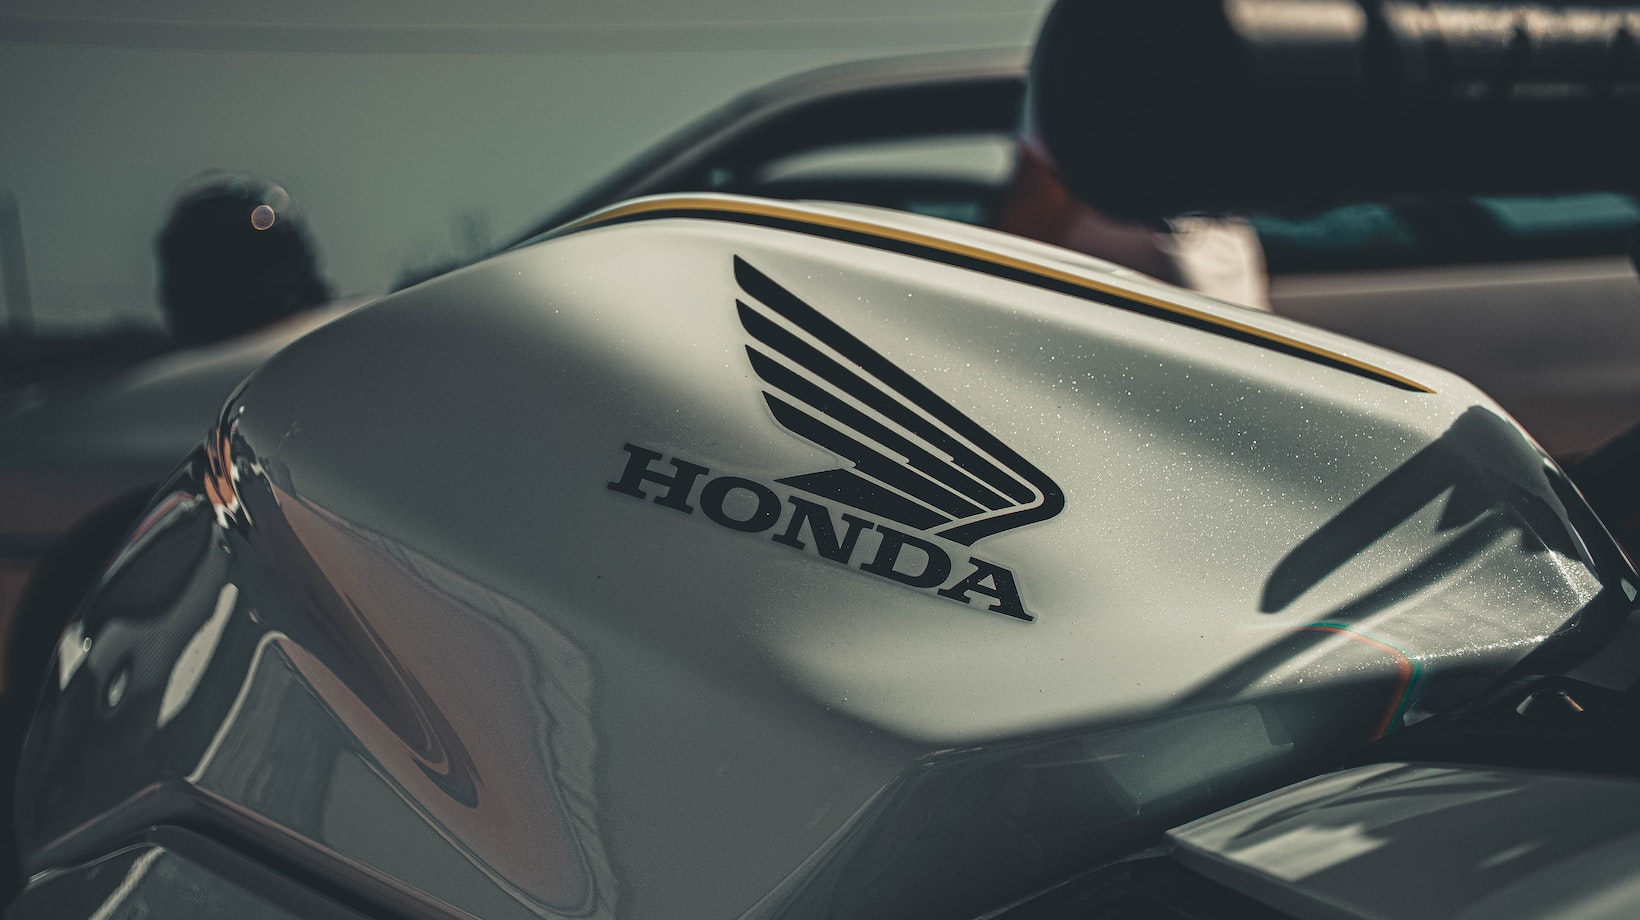 honda motorcycle emblem